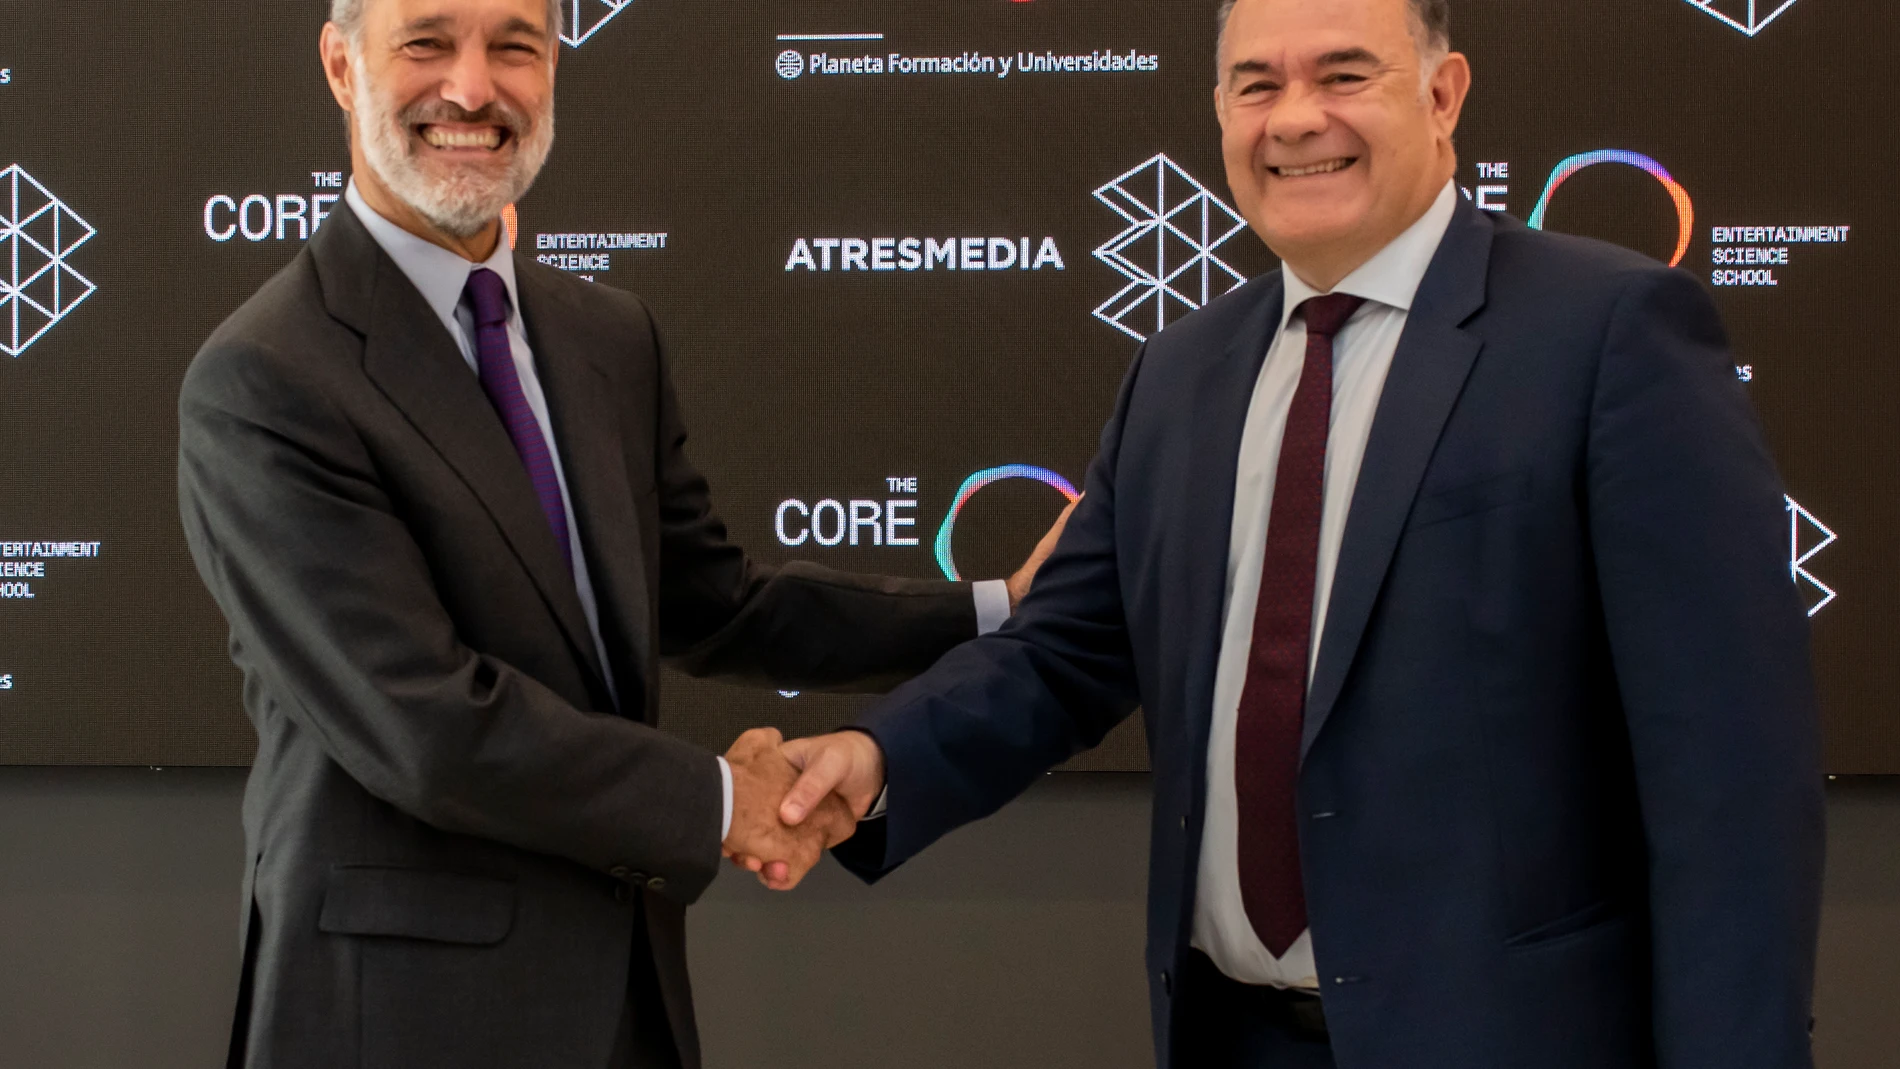 Silvio González, CEO de Atresmedia, y Carlos Giménez, CEO de Planeta Formación y Universidades